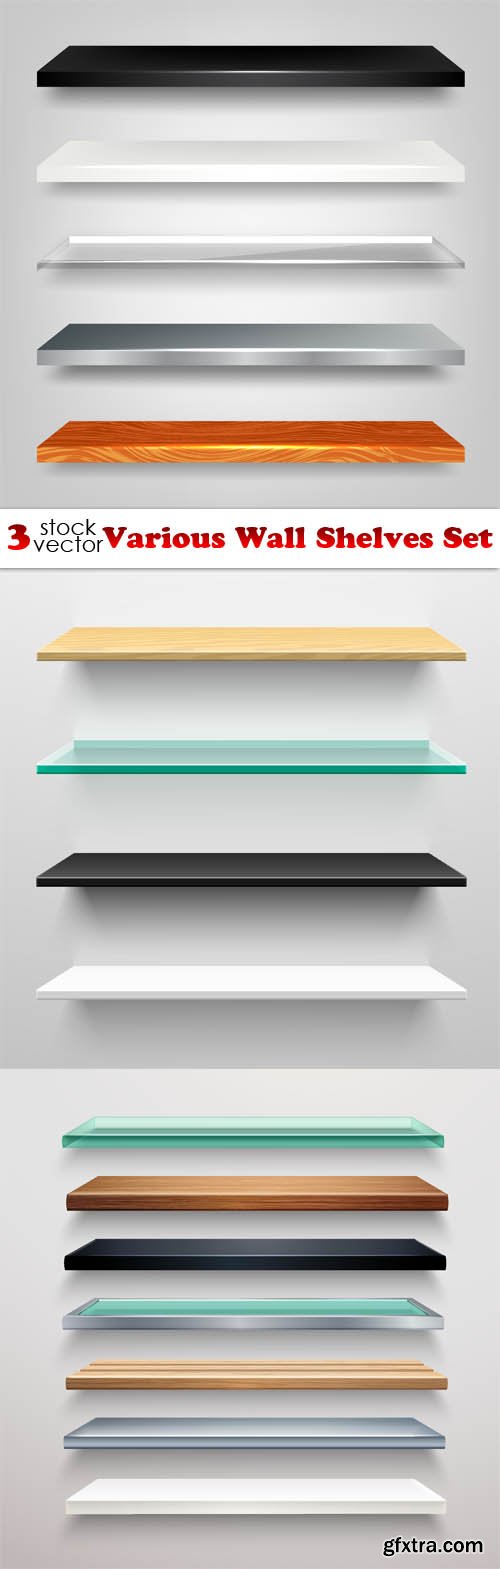 Vectors - Various Wall Shelves Set